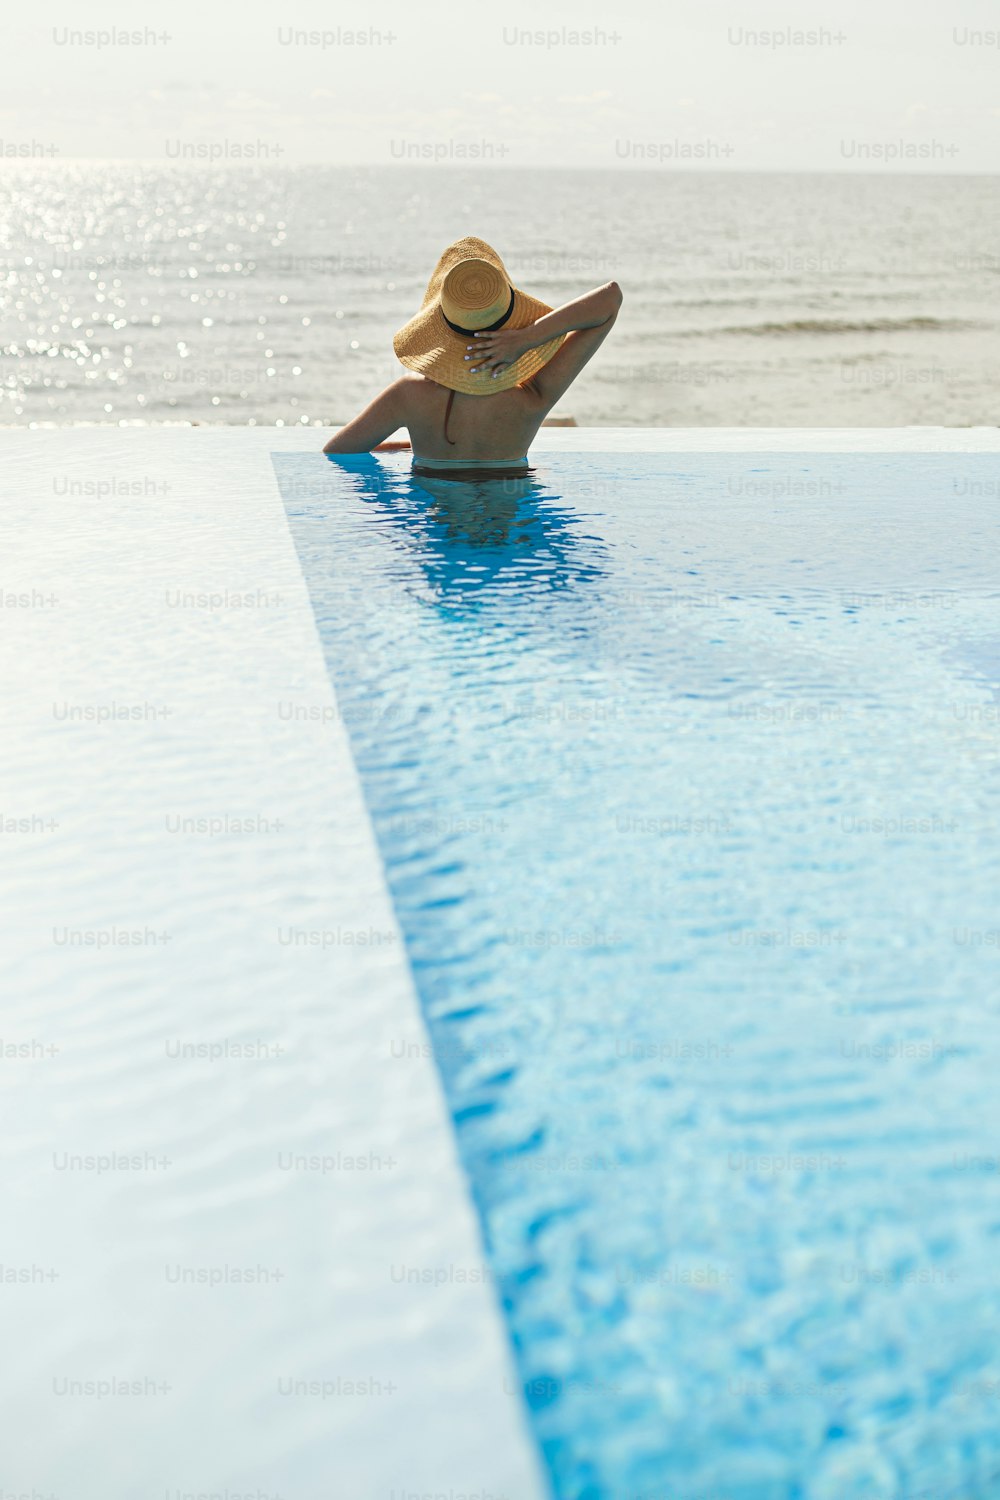 Bella donna in cappello che si rilassa sul bordo in piscina blu, godendo delle vacanze estive e della vista sul mare. Giovane femmina magra che si rilassa al resort tropicale in piscina. Viaggi e vacanze. Spazio per il testo